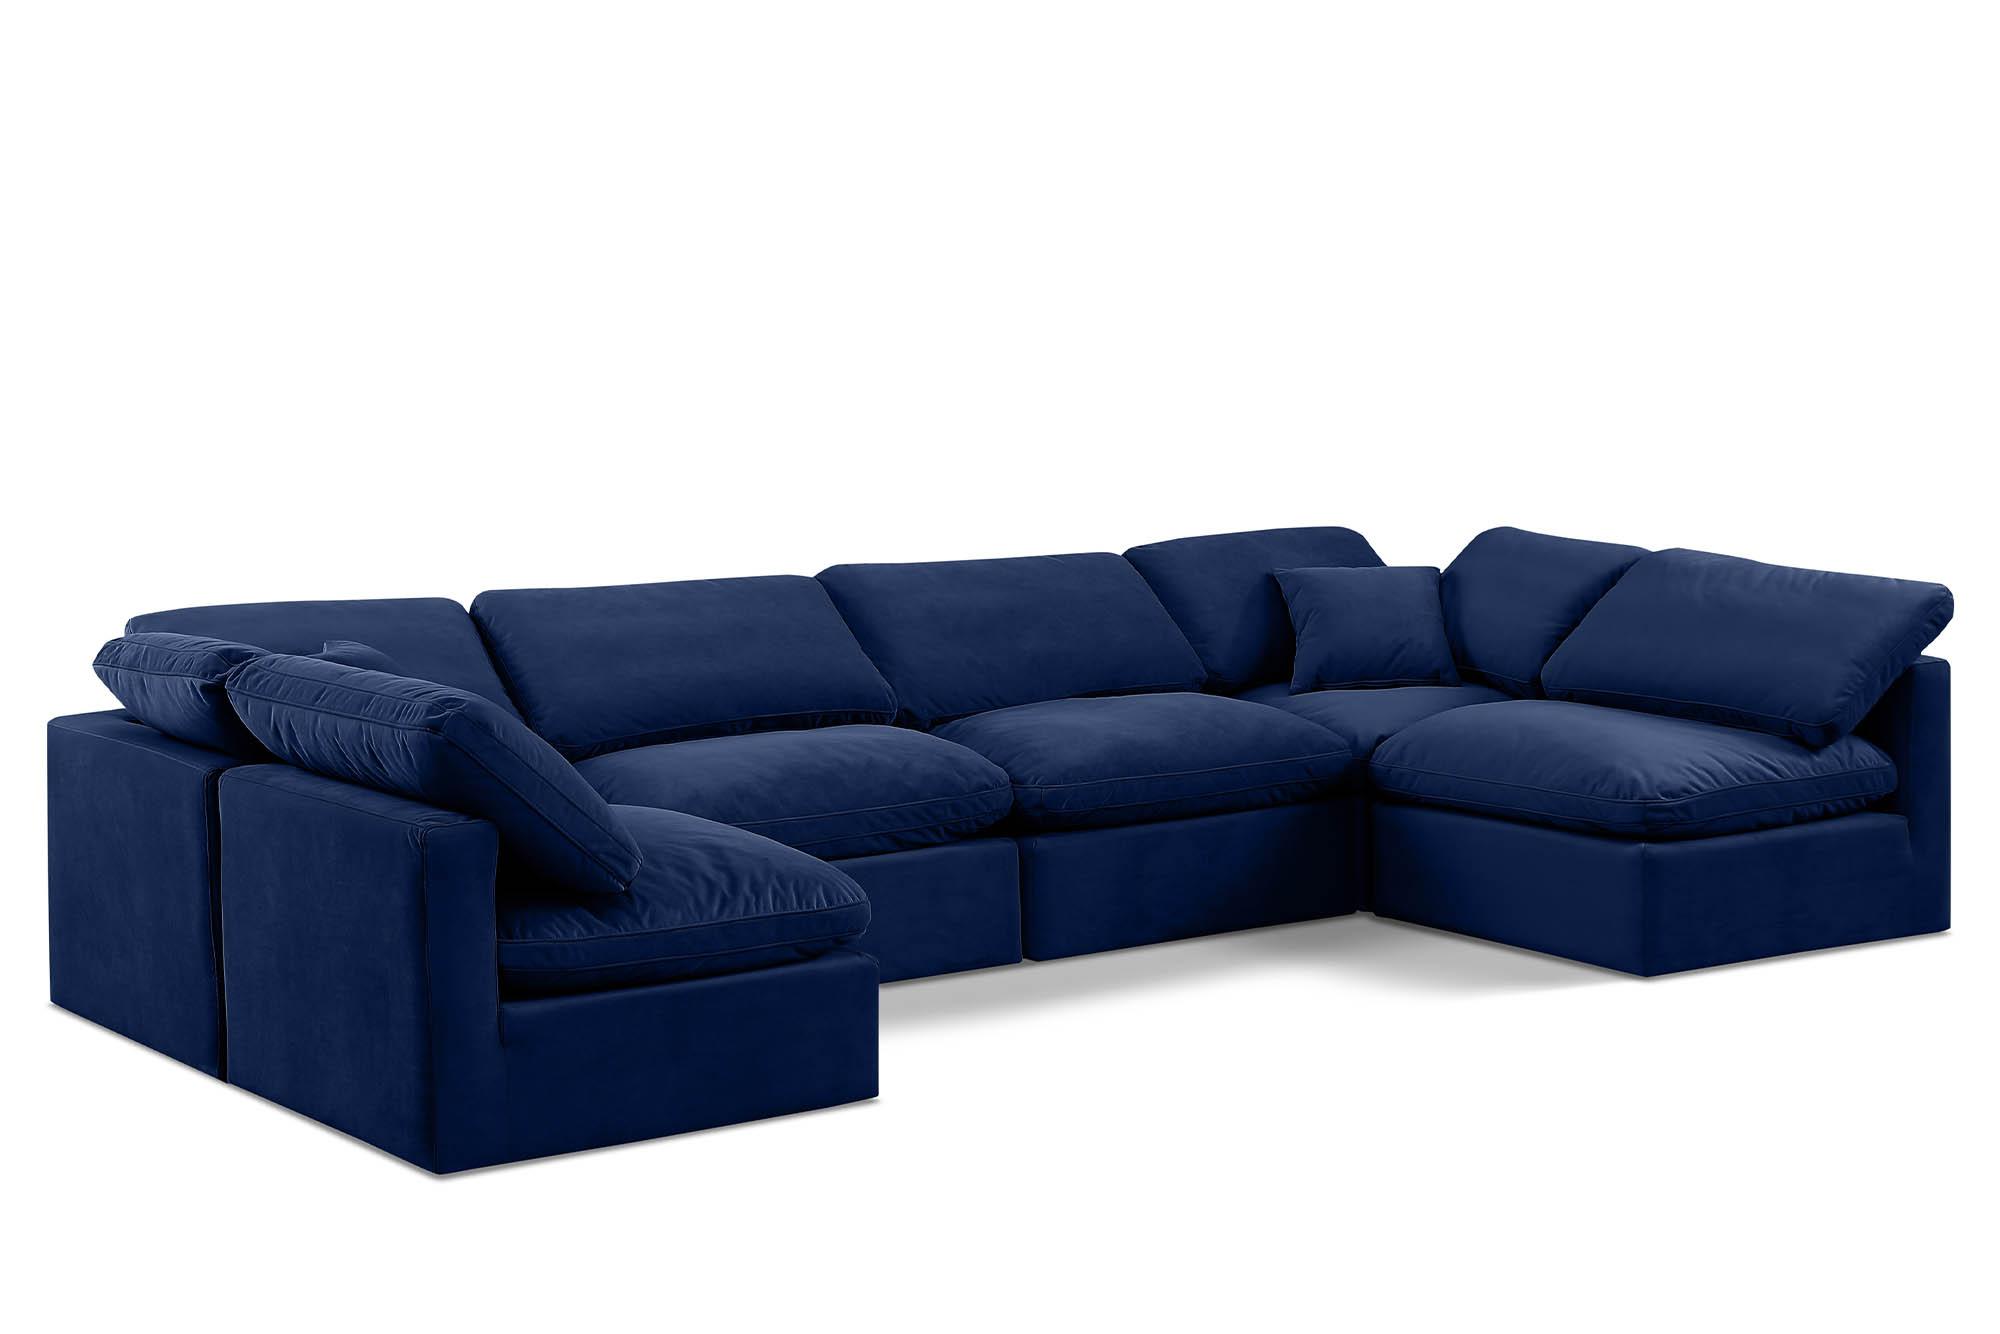 Contemporary, Modern Modular Sectional Sofa INDULGE 147Navy-Sec6D 147Navy-Sec6D in Navy Velvet